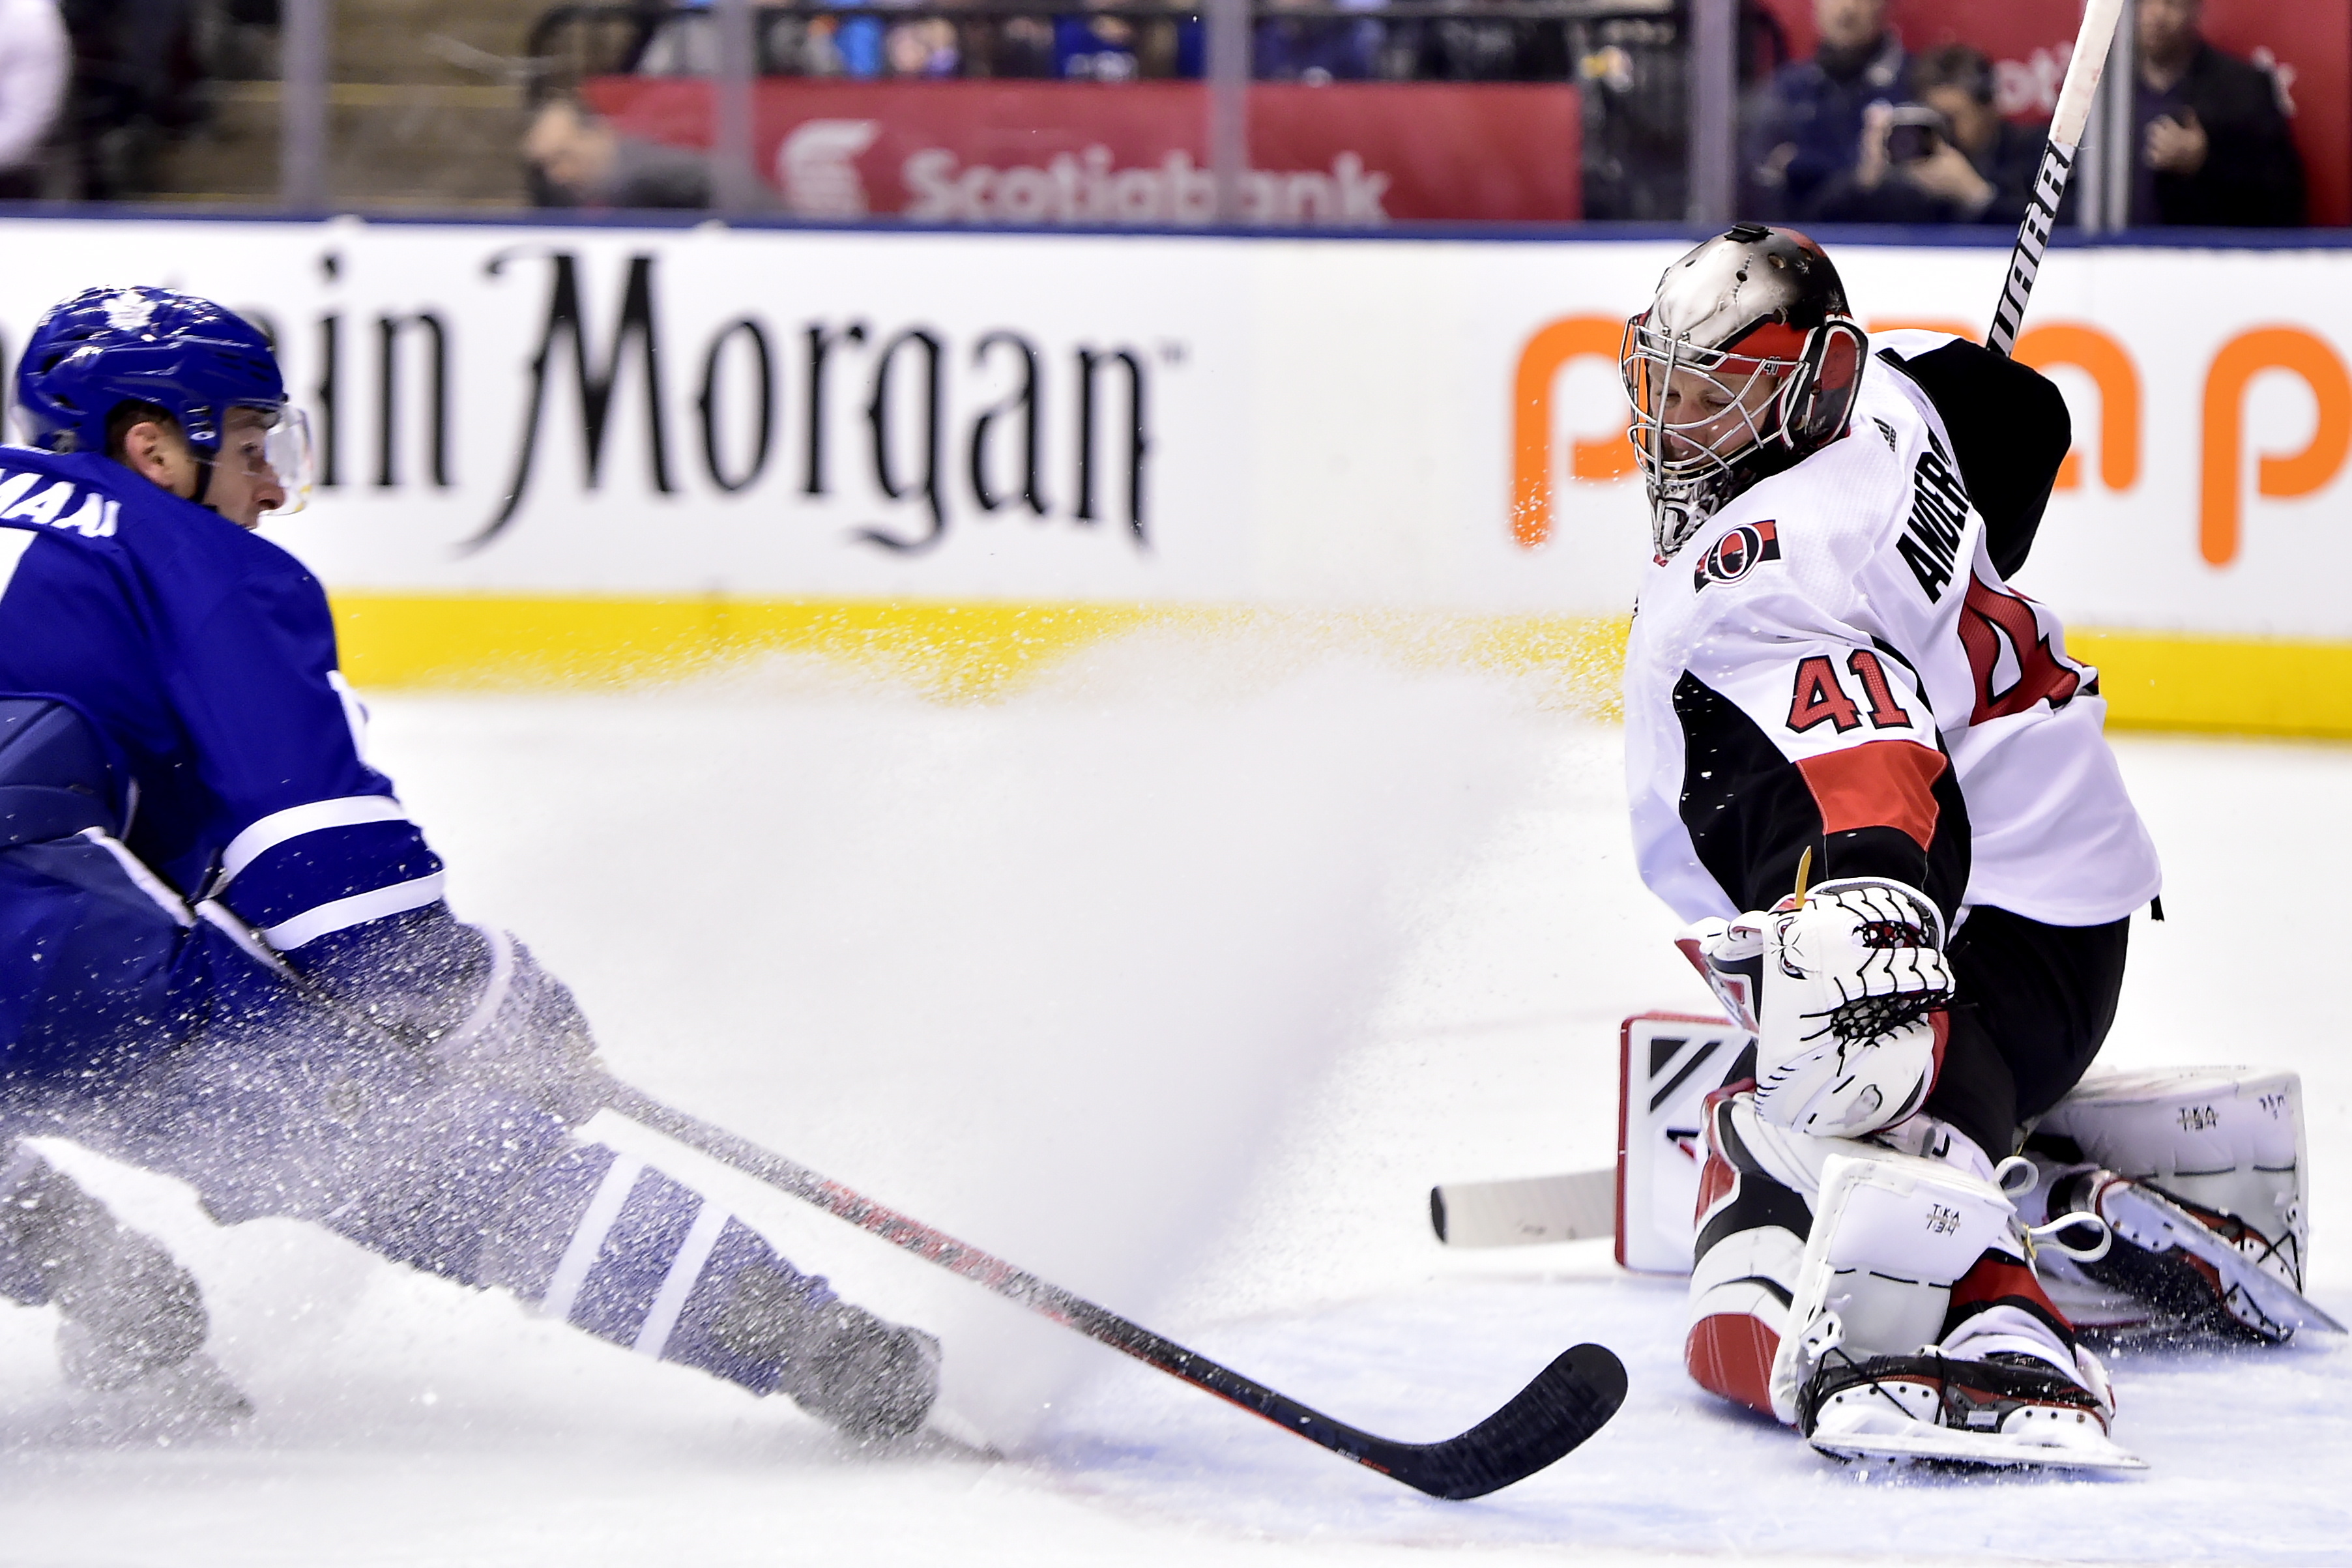 Rielly scores winner, Maple Leafs beat Senators 5-4